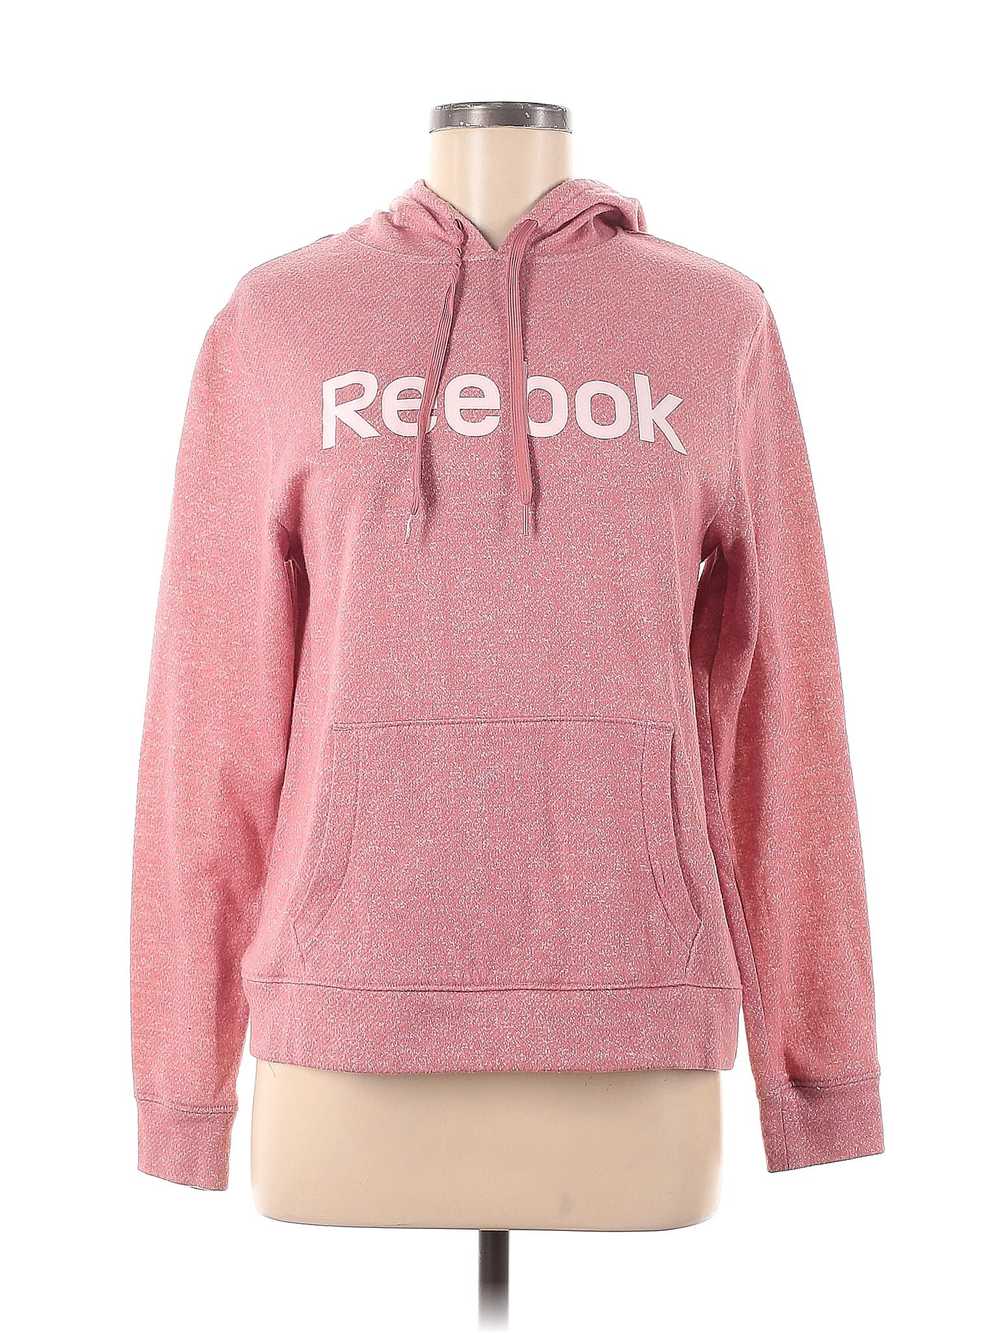 Reebok Women Pink Pullover Hoodie M - image 1